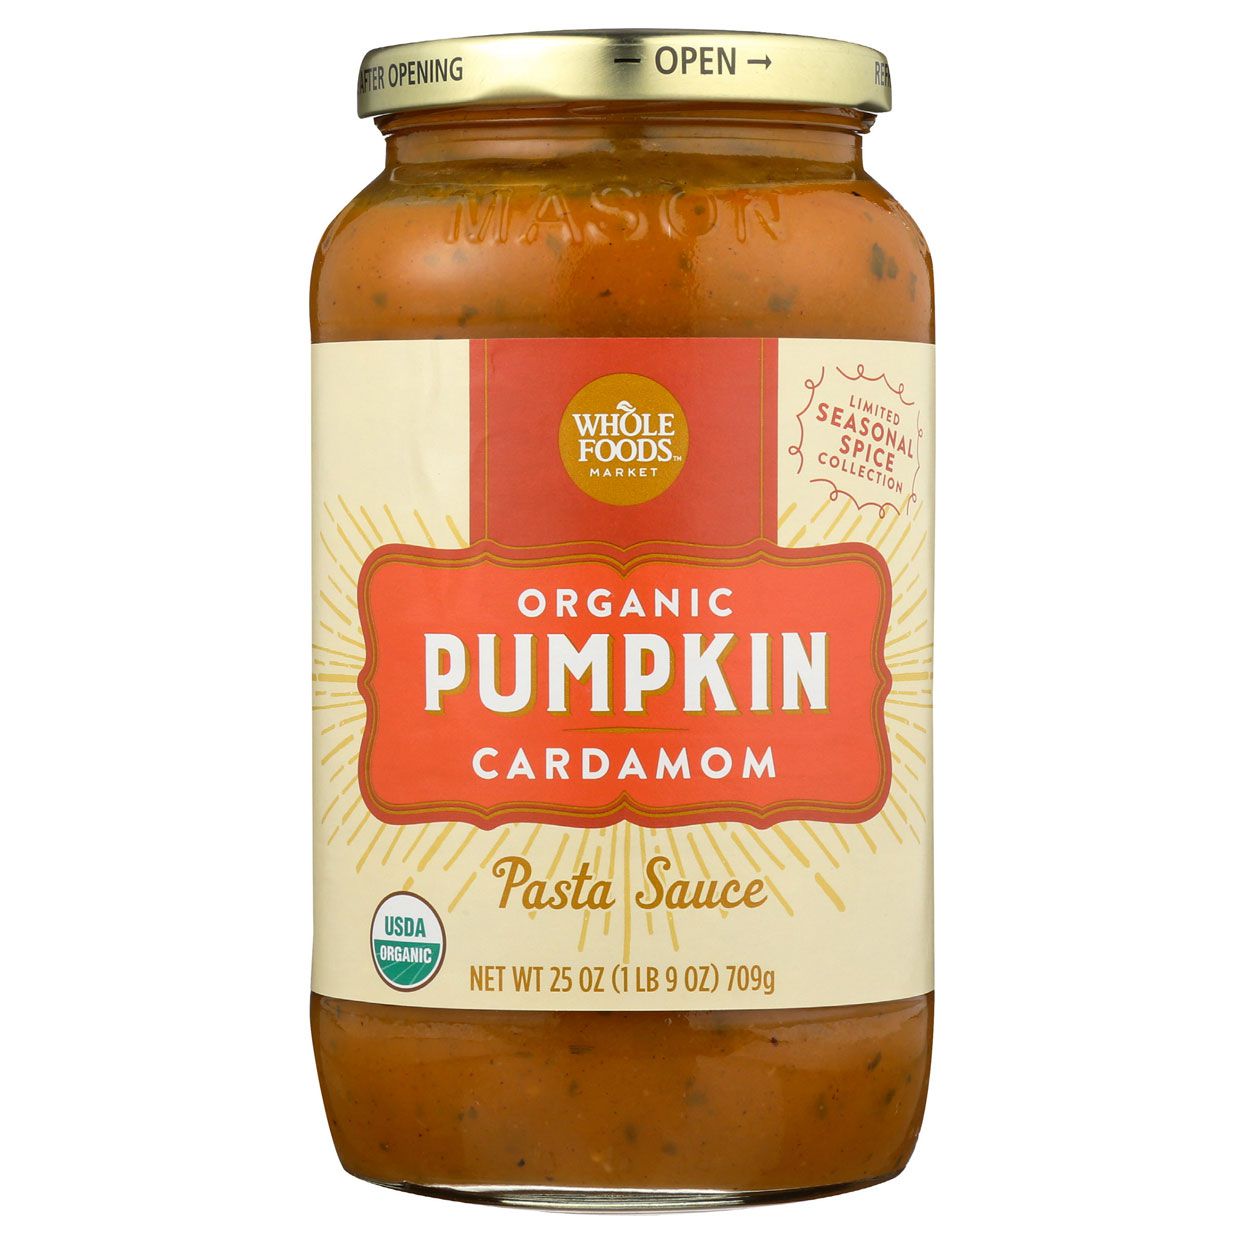 pumpkin cardamom jarred pasta sauce